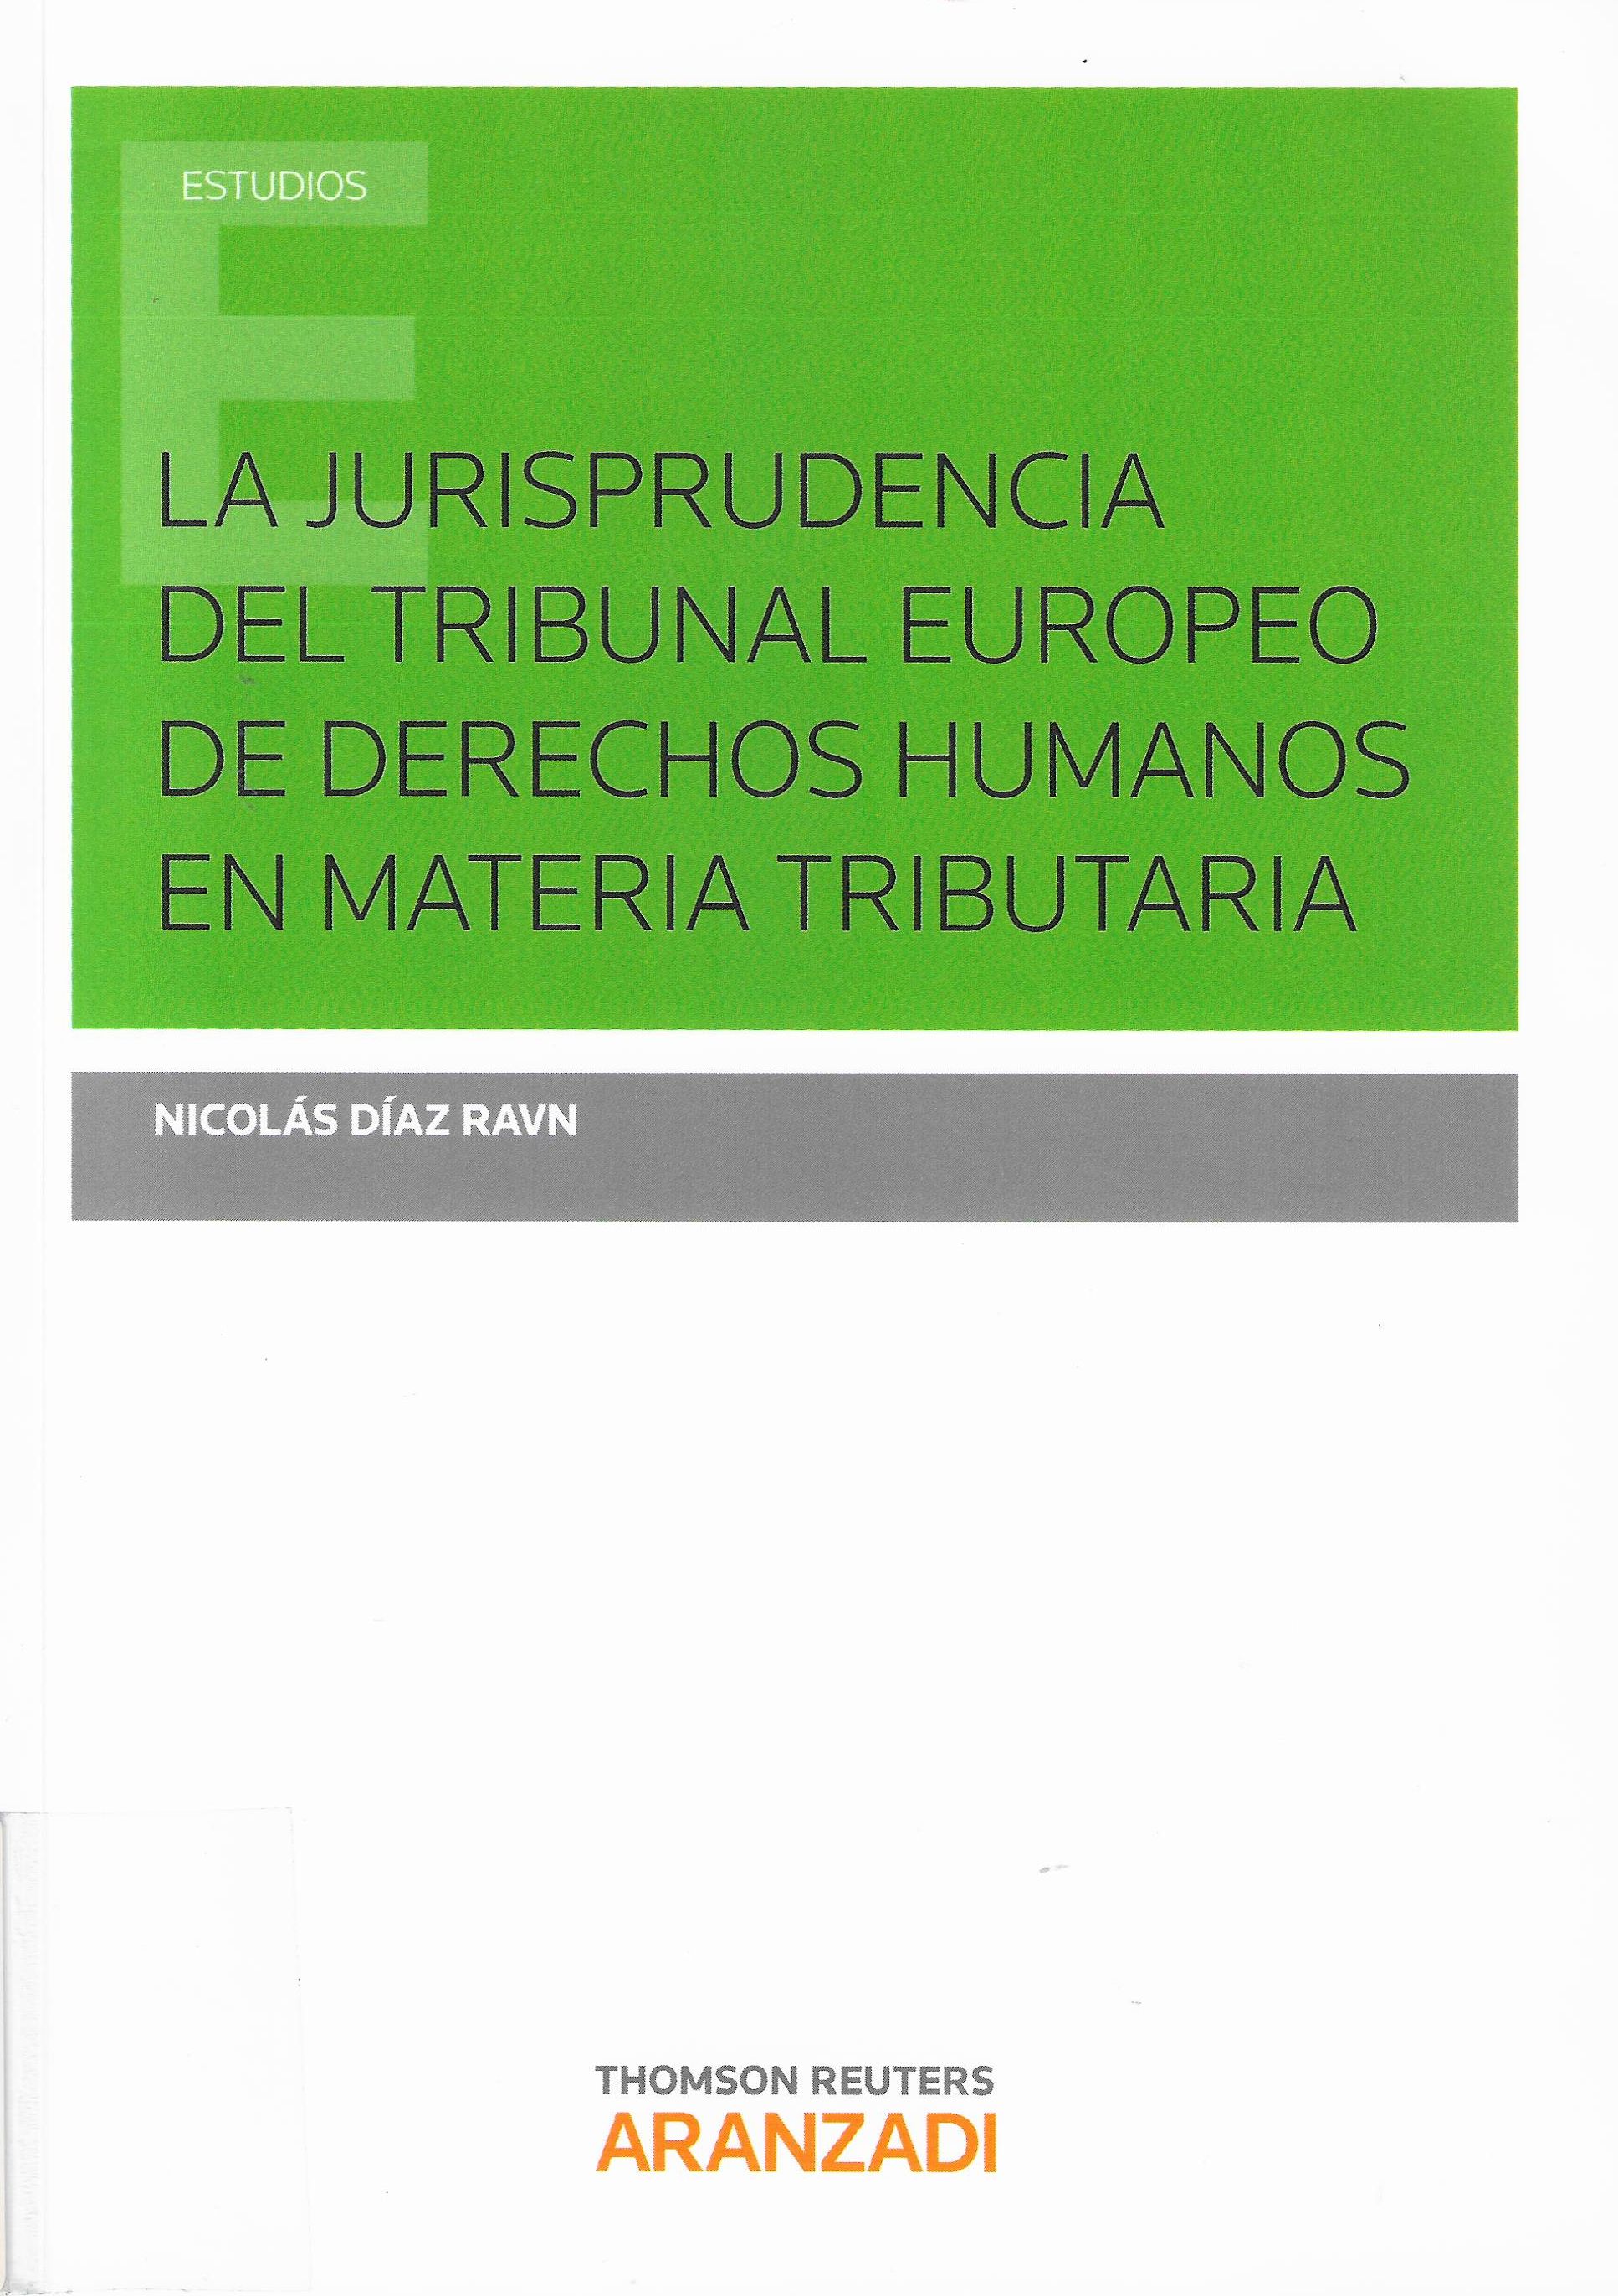 Imagen de portada del libro La jurisprudencia del Tribunal Europeo de Derechos Humanos en materia tributaria